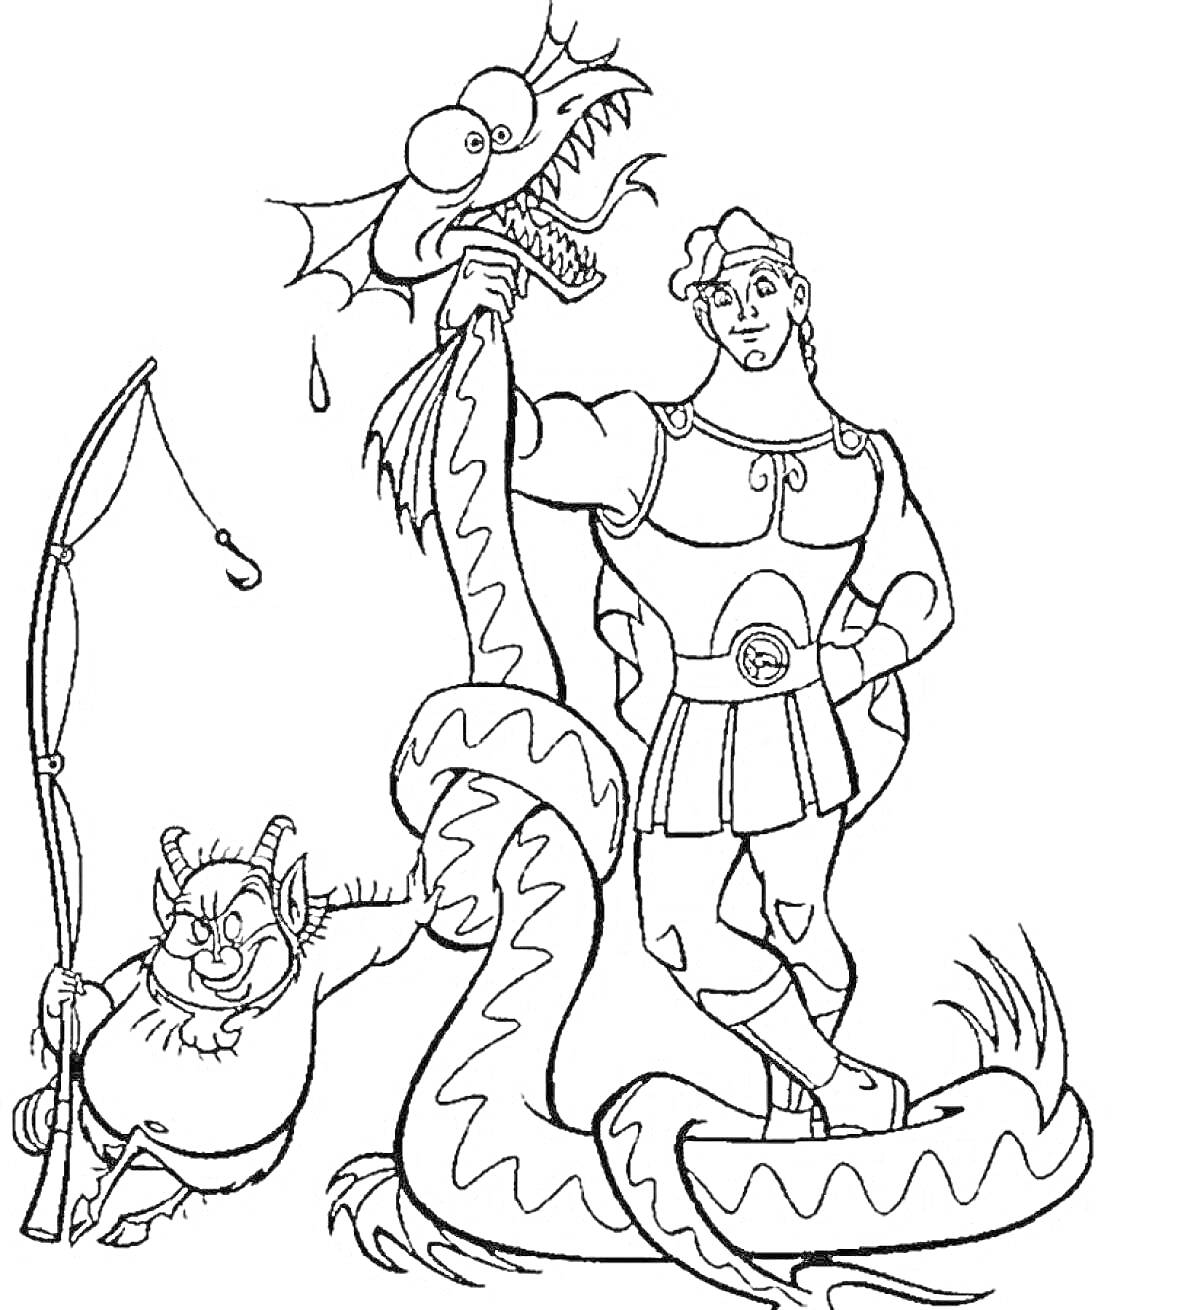 Геракл, победивший змея, и сатир с луком